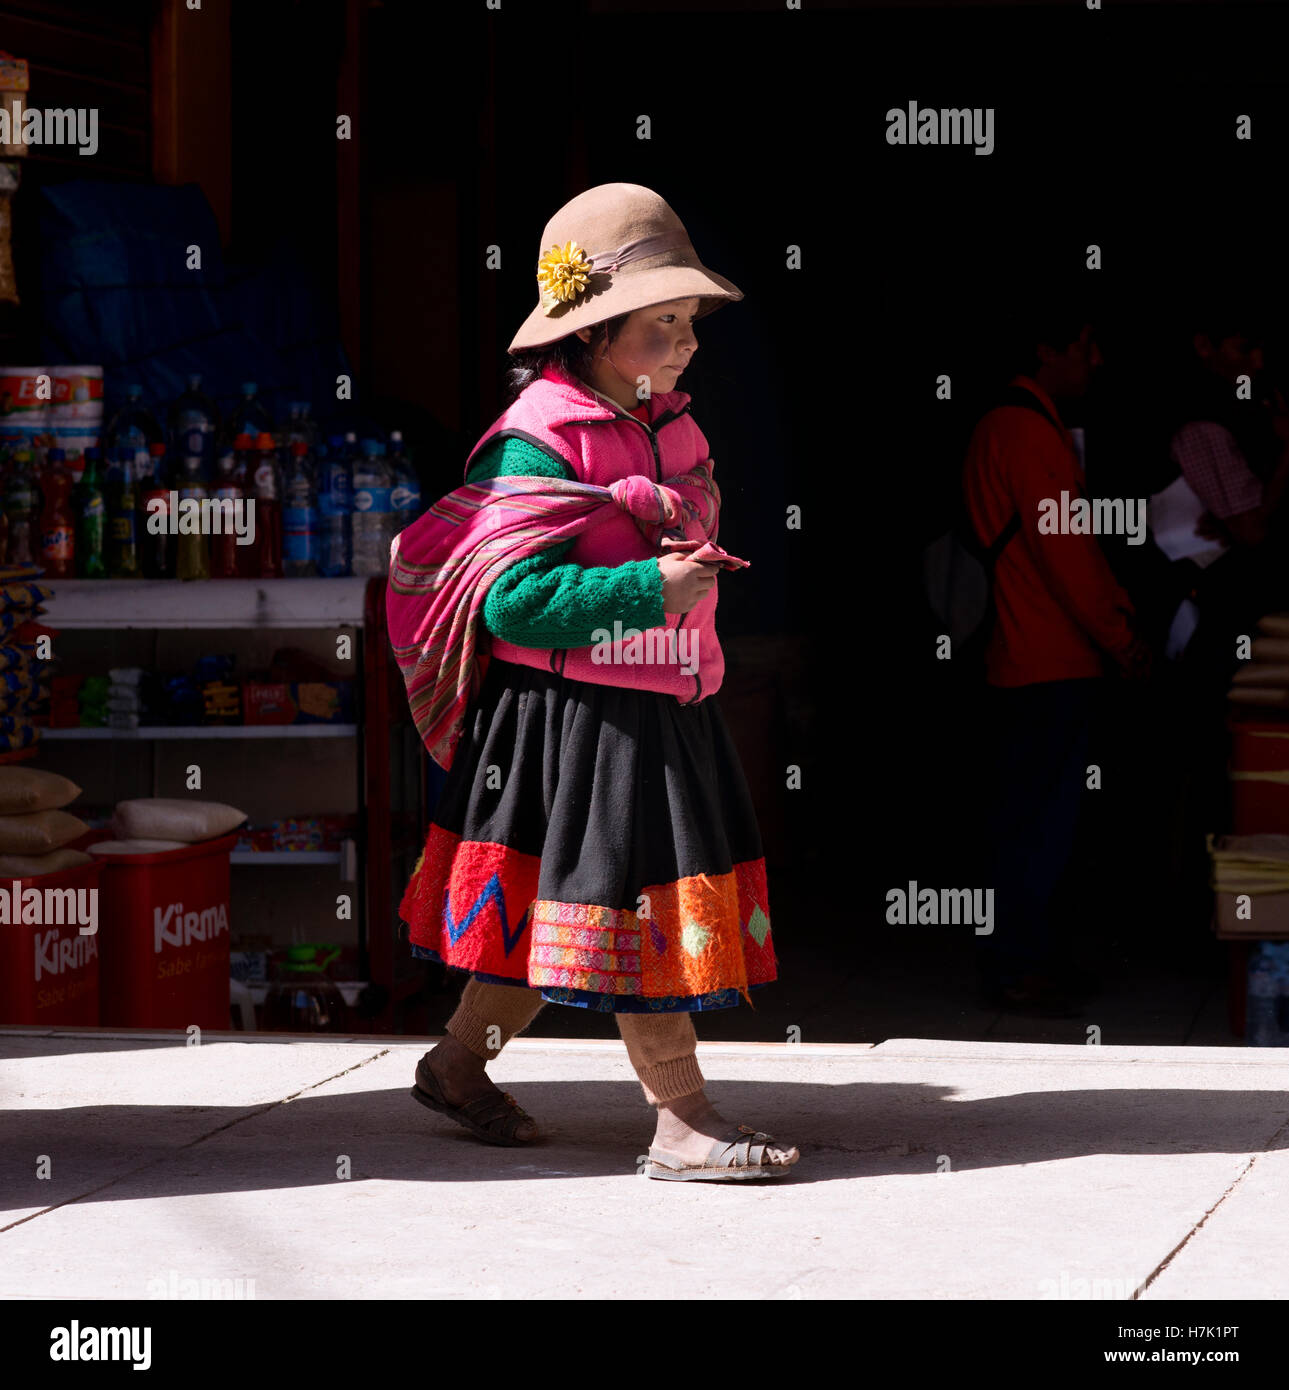 Peruanische Mädchen in bunten traditionellen handgemachten Outfit gekleidet. 19. Oktober 2012 - Ollantaytambo, Peru Stockfoto